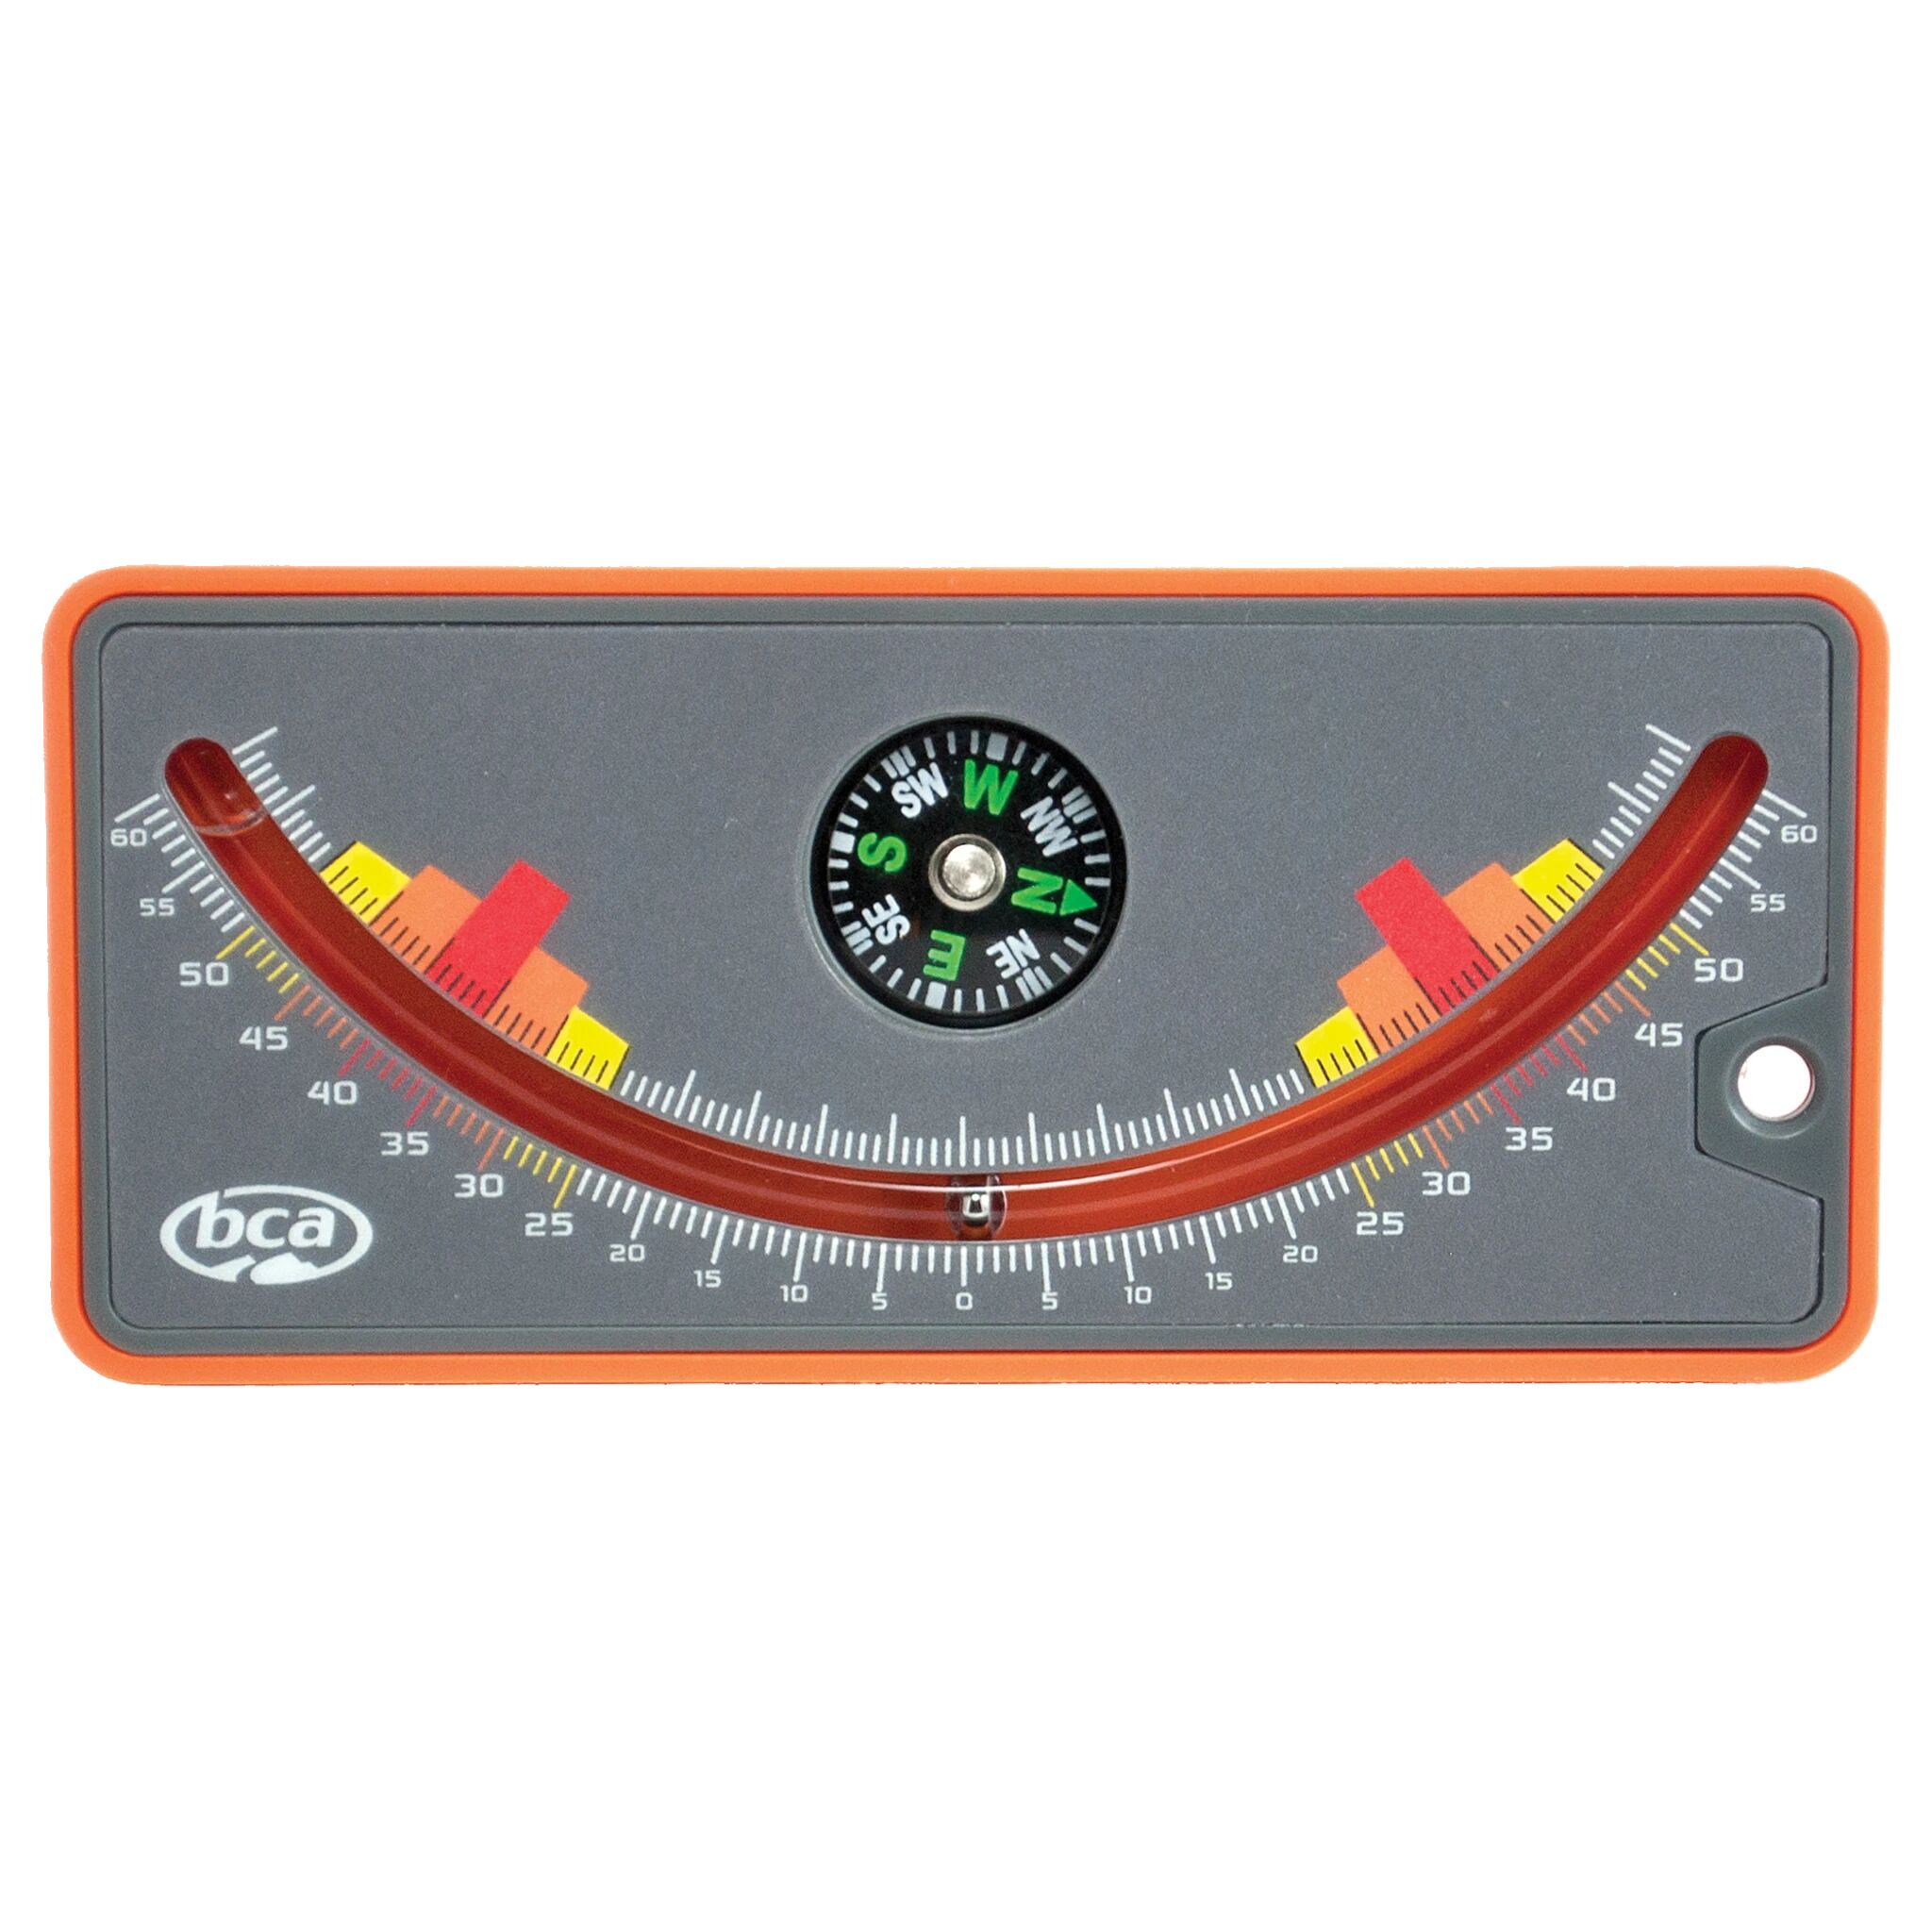 BCA Slope Meter 20/21, helningsmåler/inclinometer One Size orange/grey